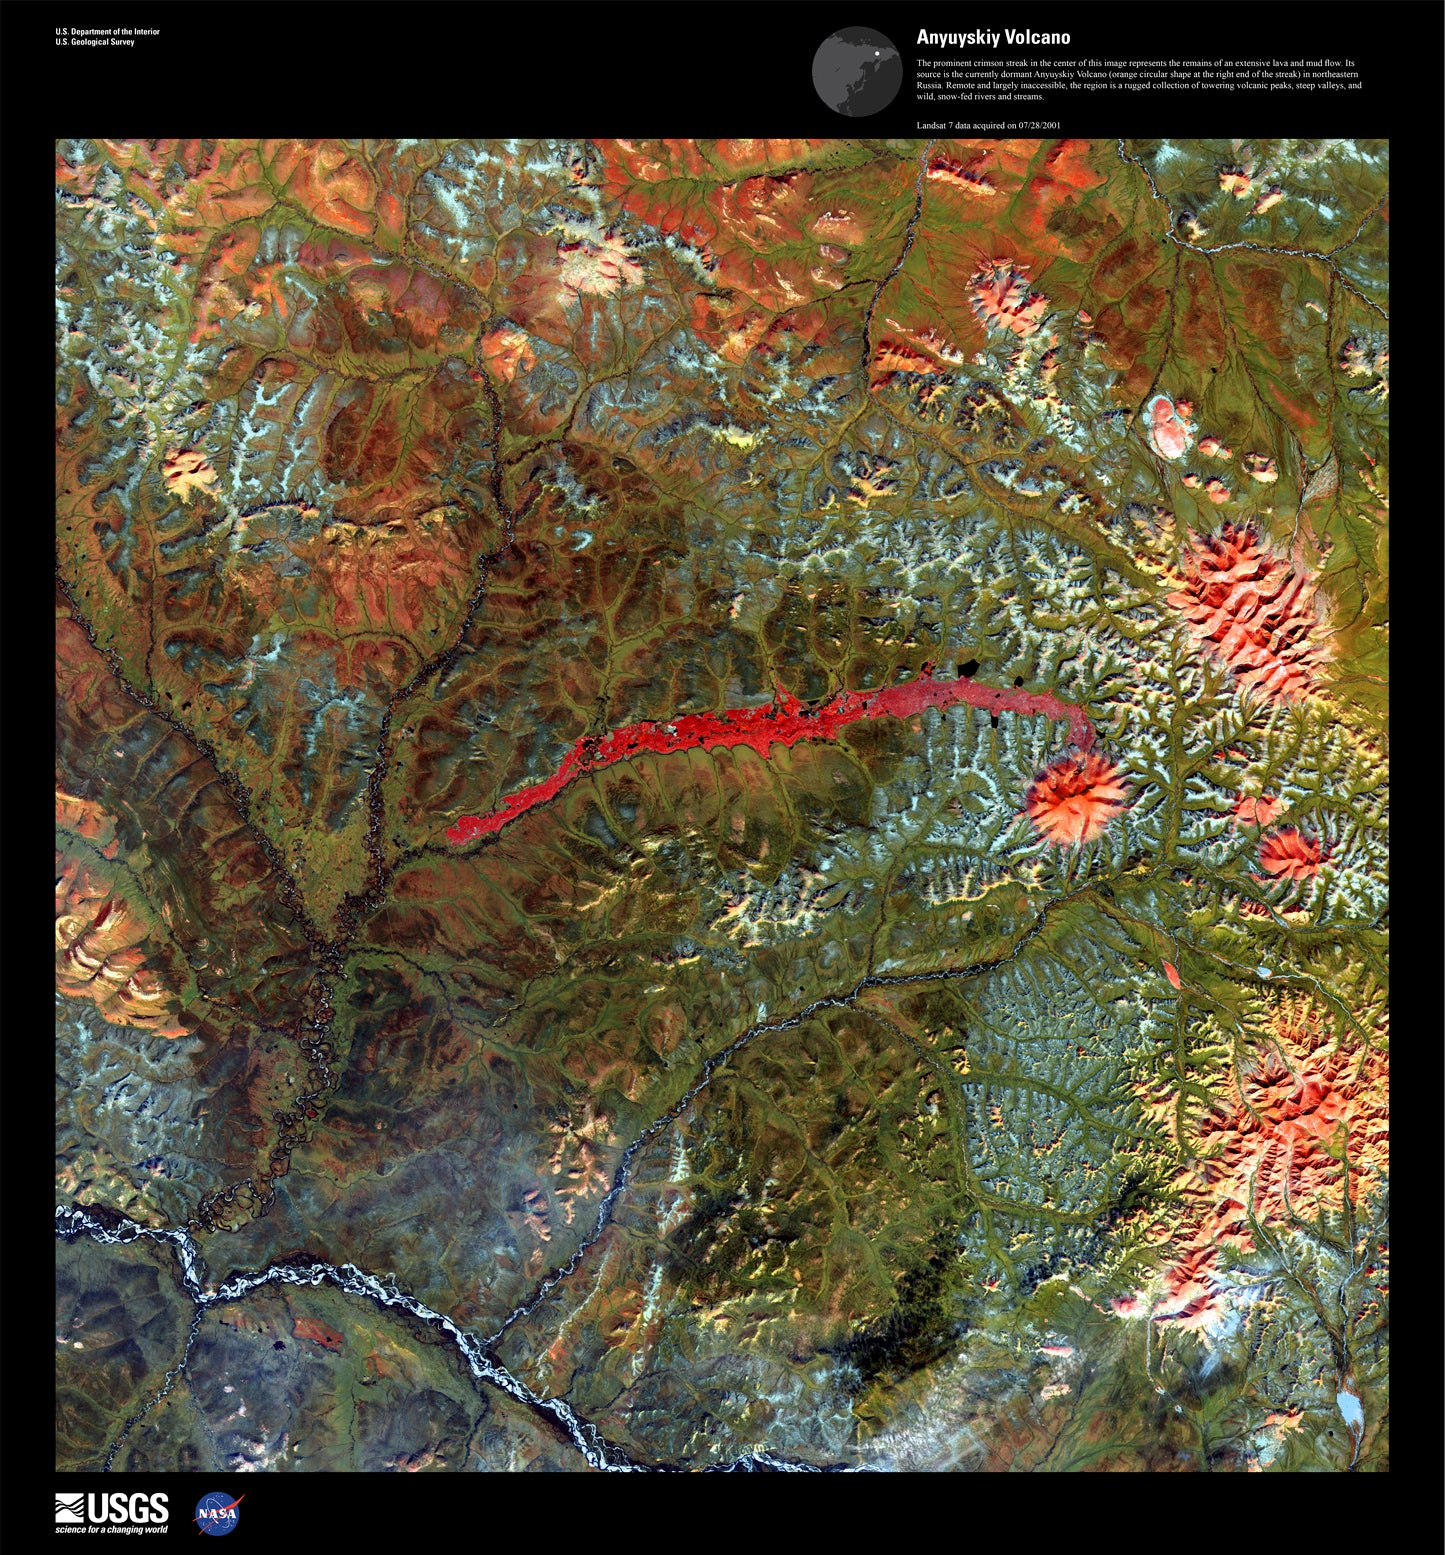 Anyuyskiy Volcano - Satellite Photography